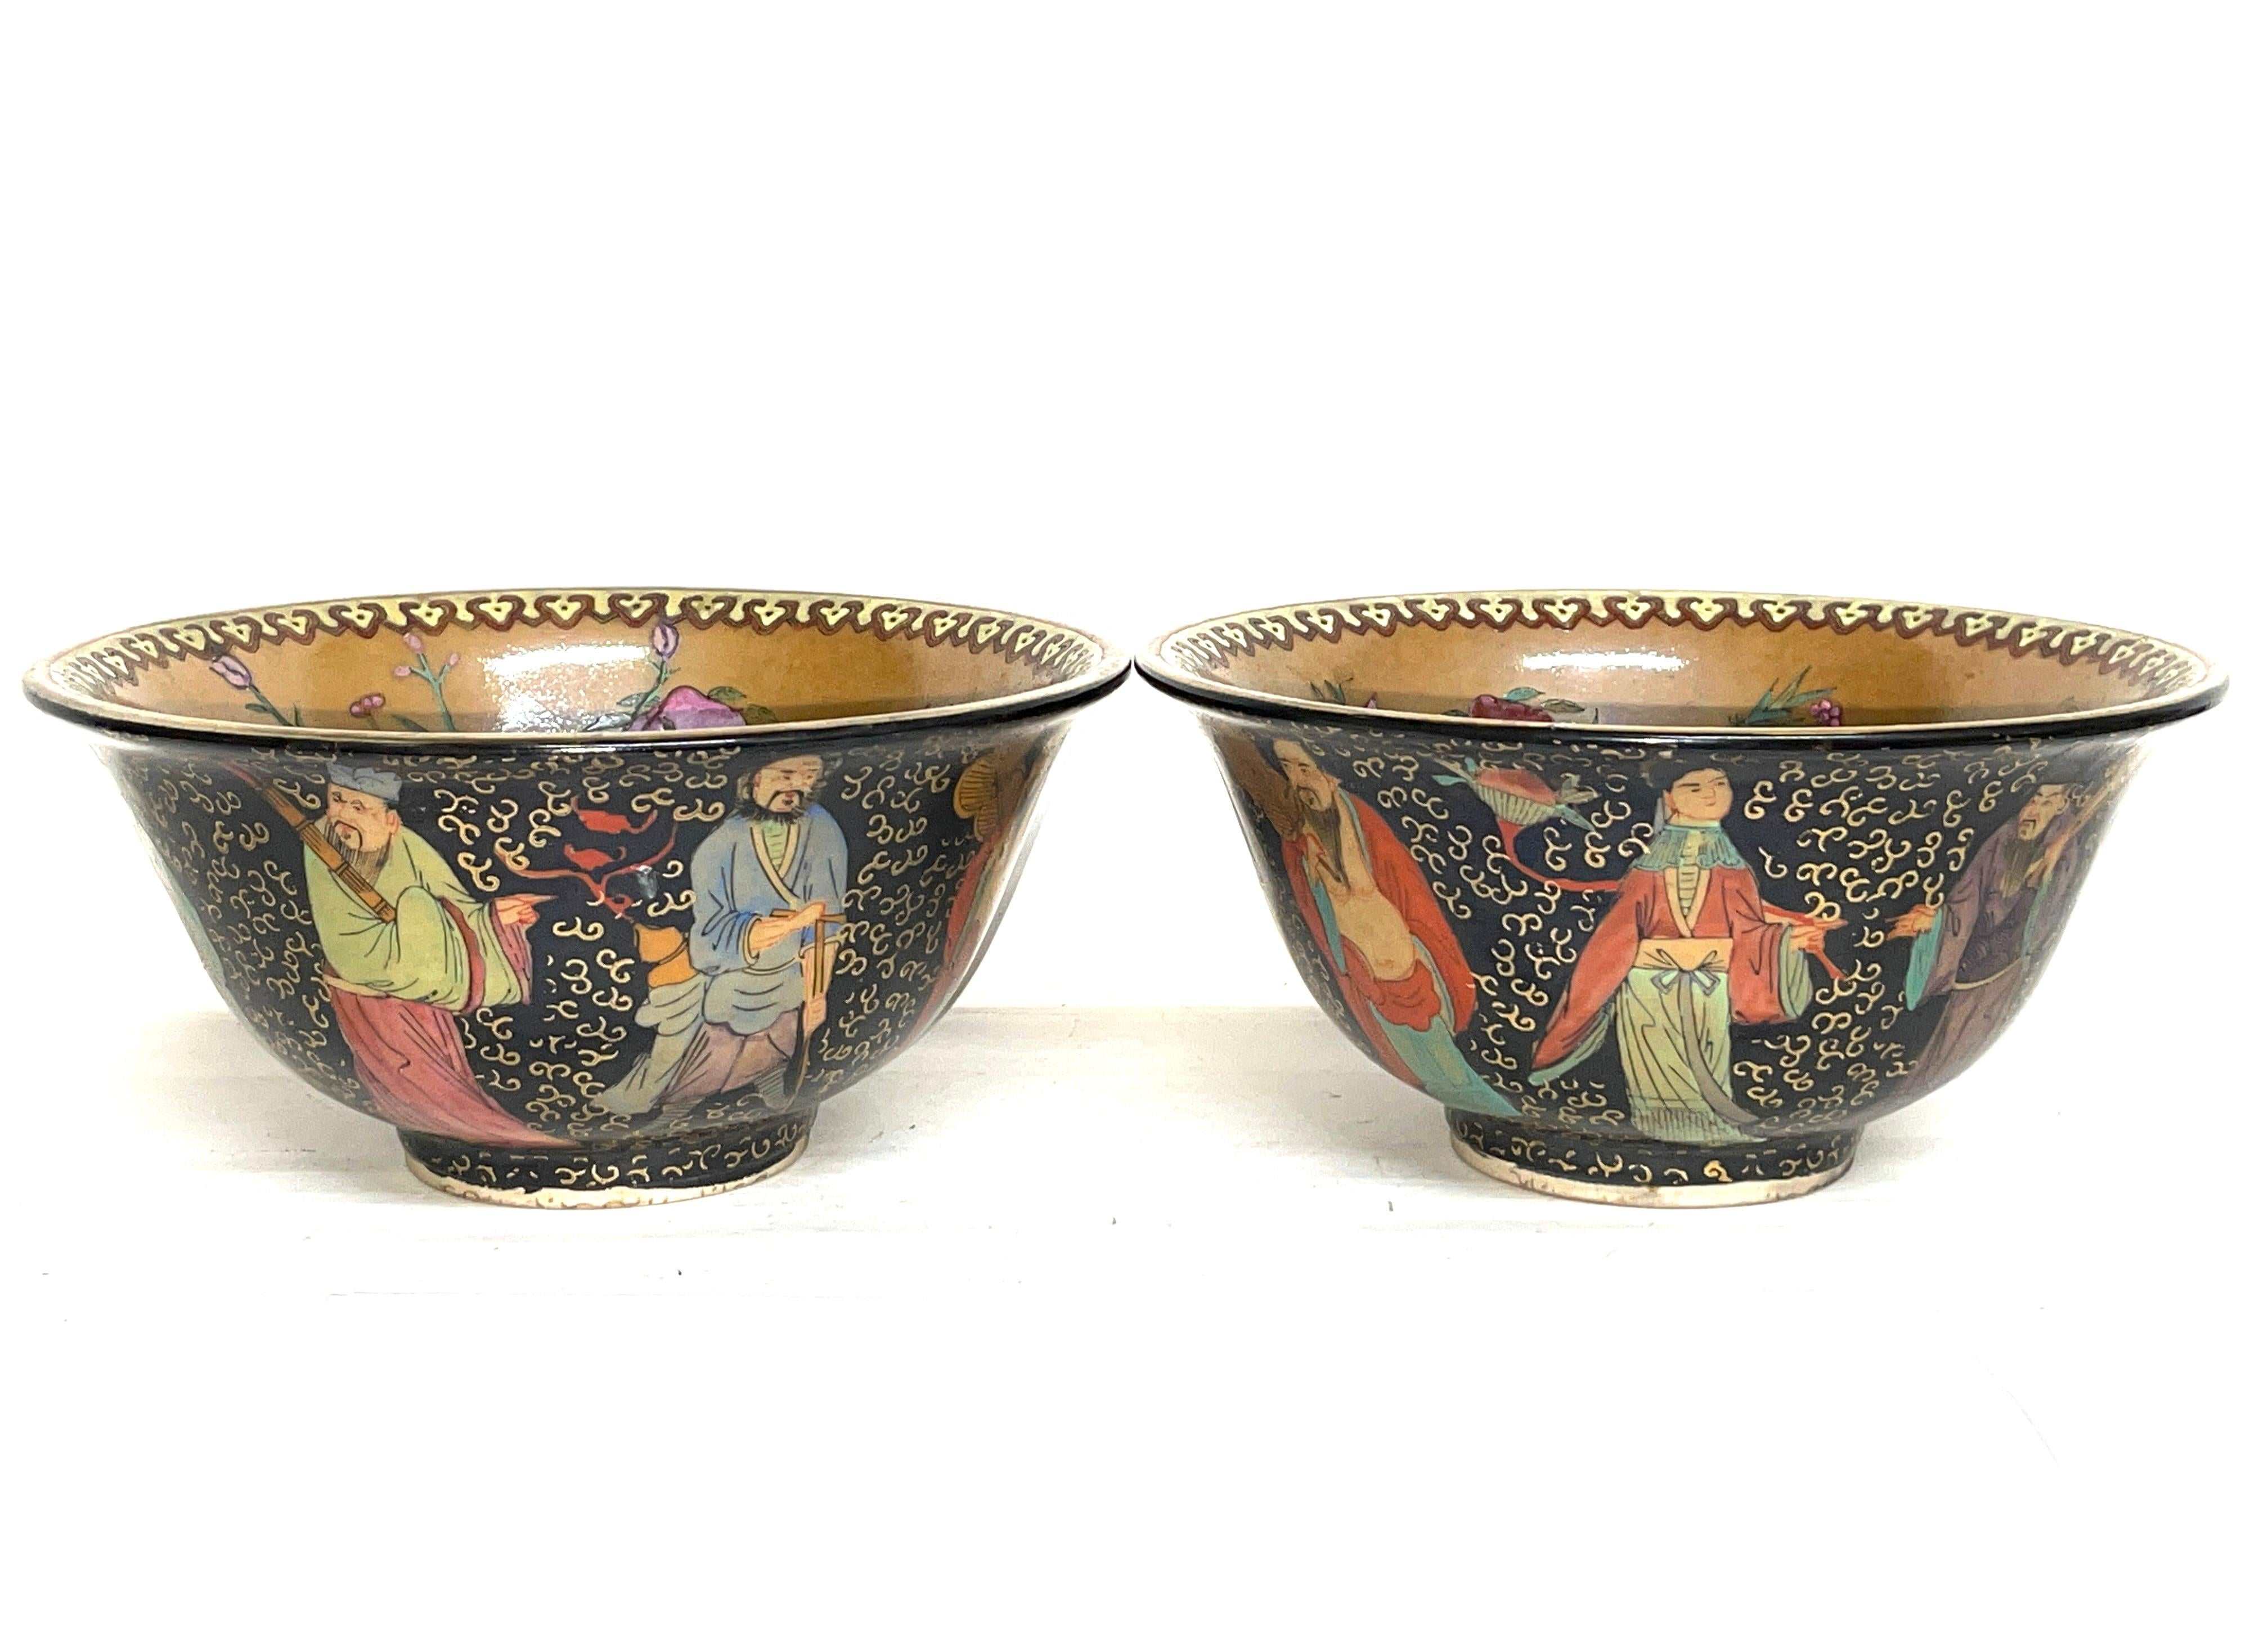 Paar antike chinesische Keramikschalen. 20. Jahrhundert. Asiatische Kunst.

Dekorative und reichhaltig bemalte Keramikschalen.